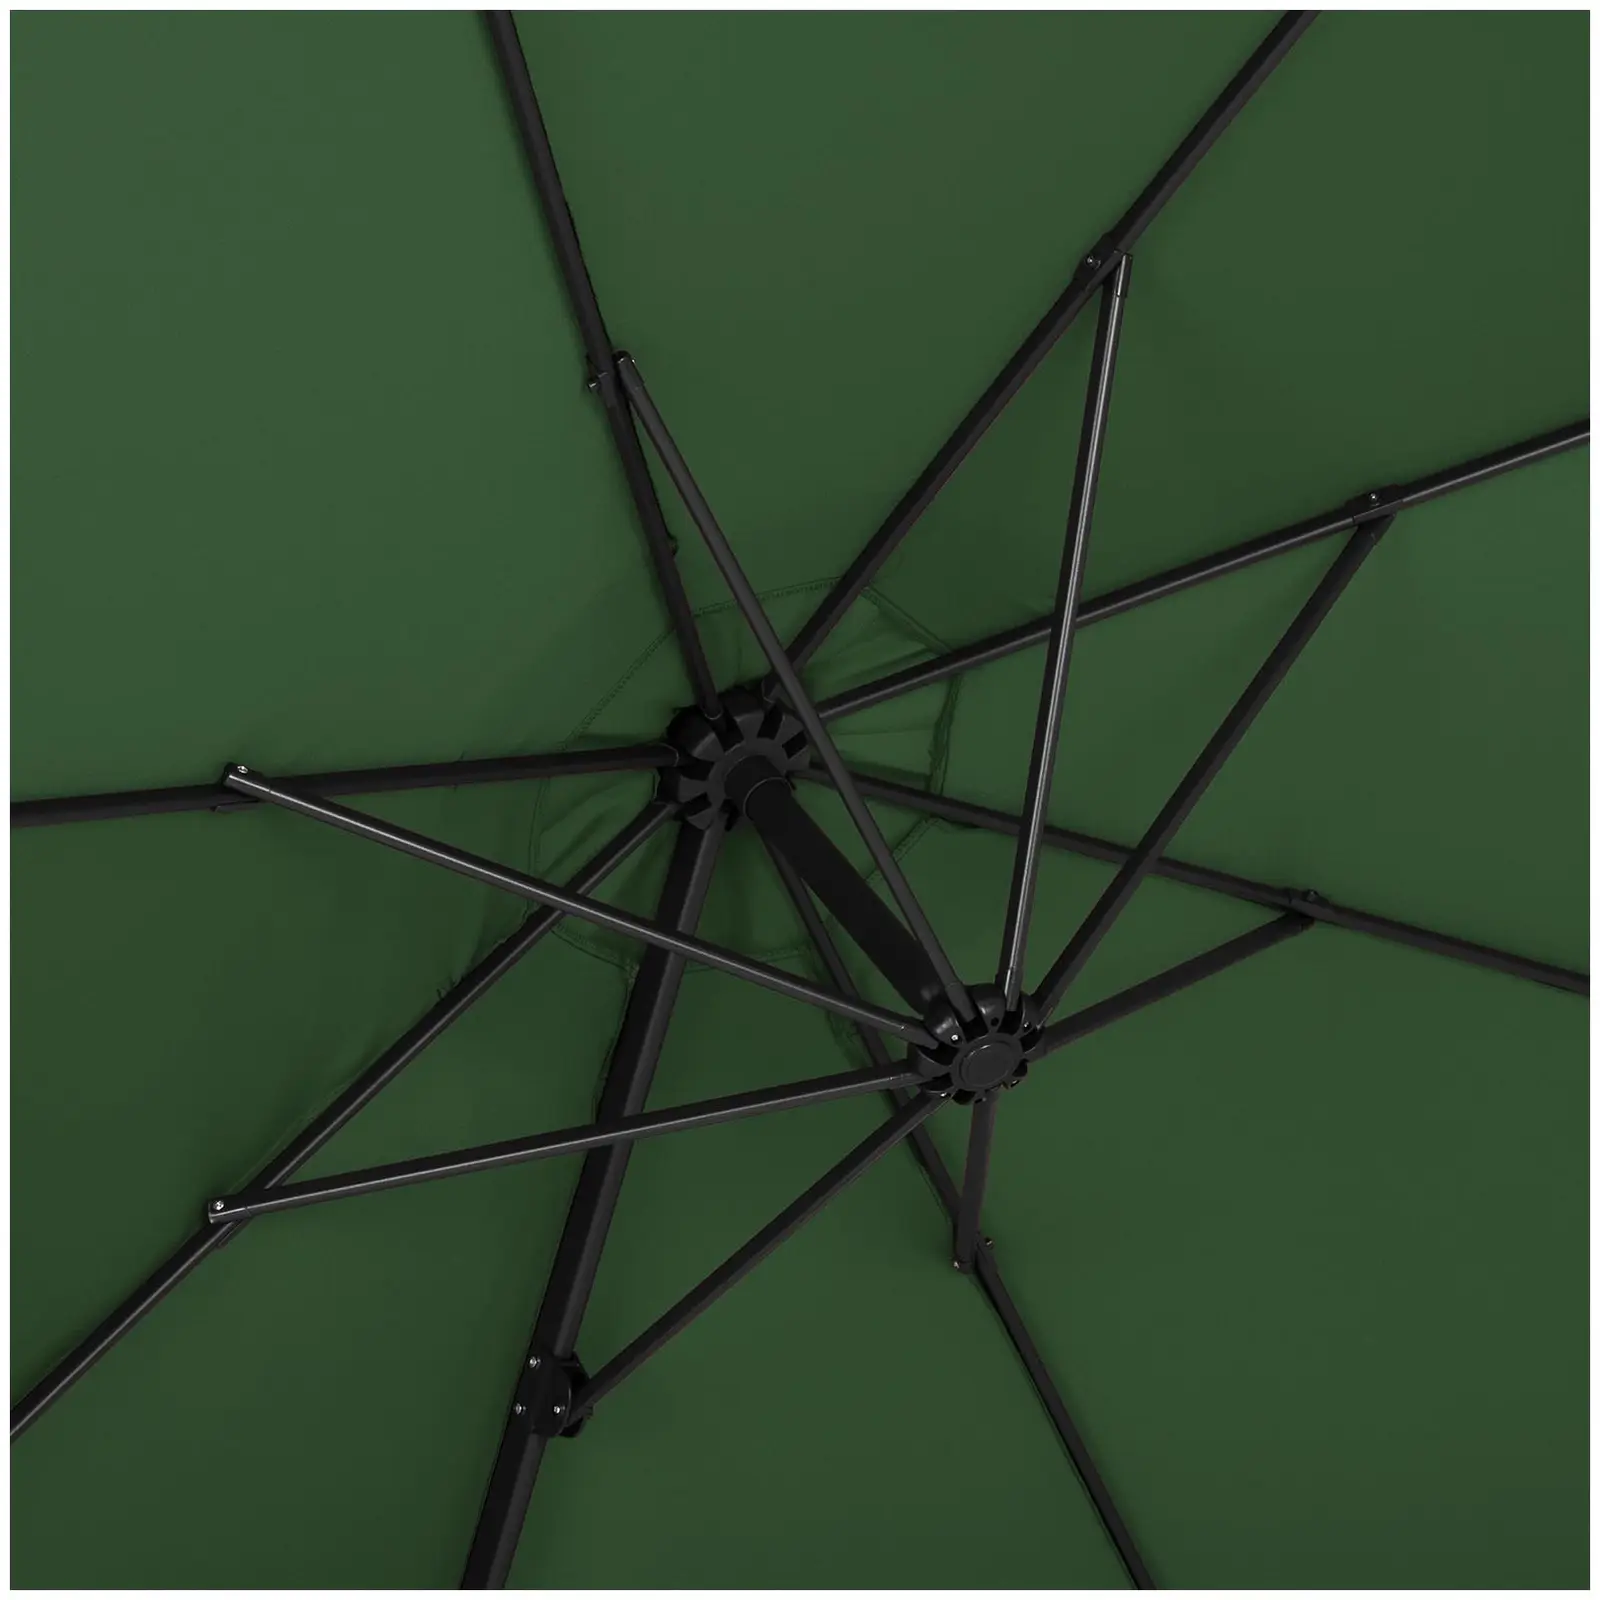 Brugt Hængeparasol - grøn - rund - 300 cm i diameter